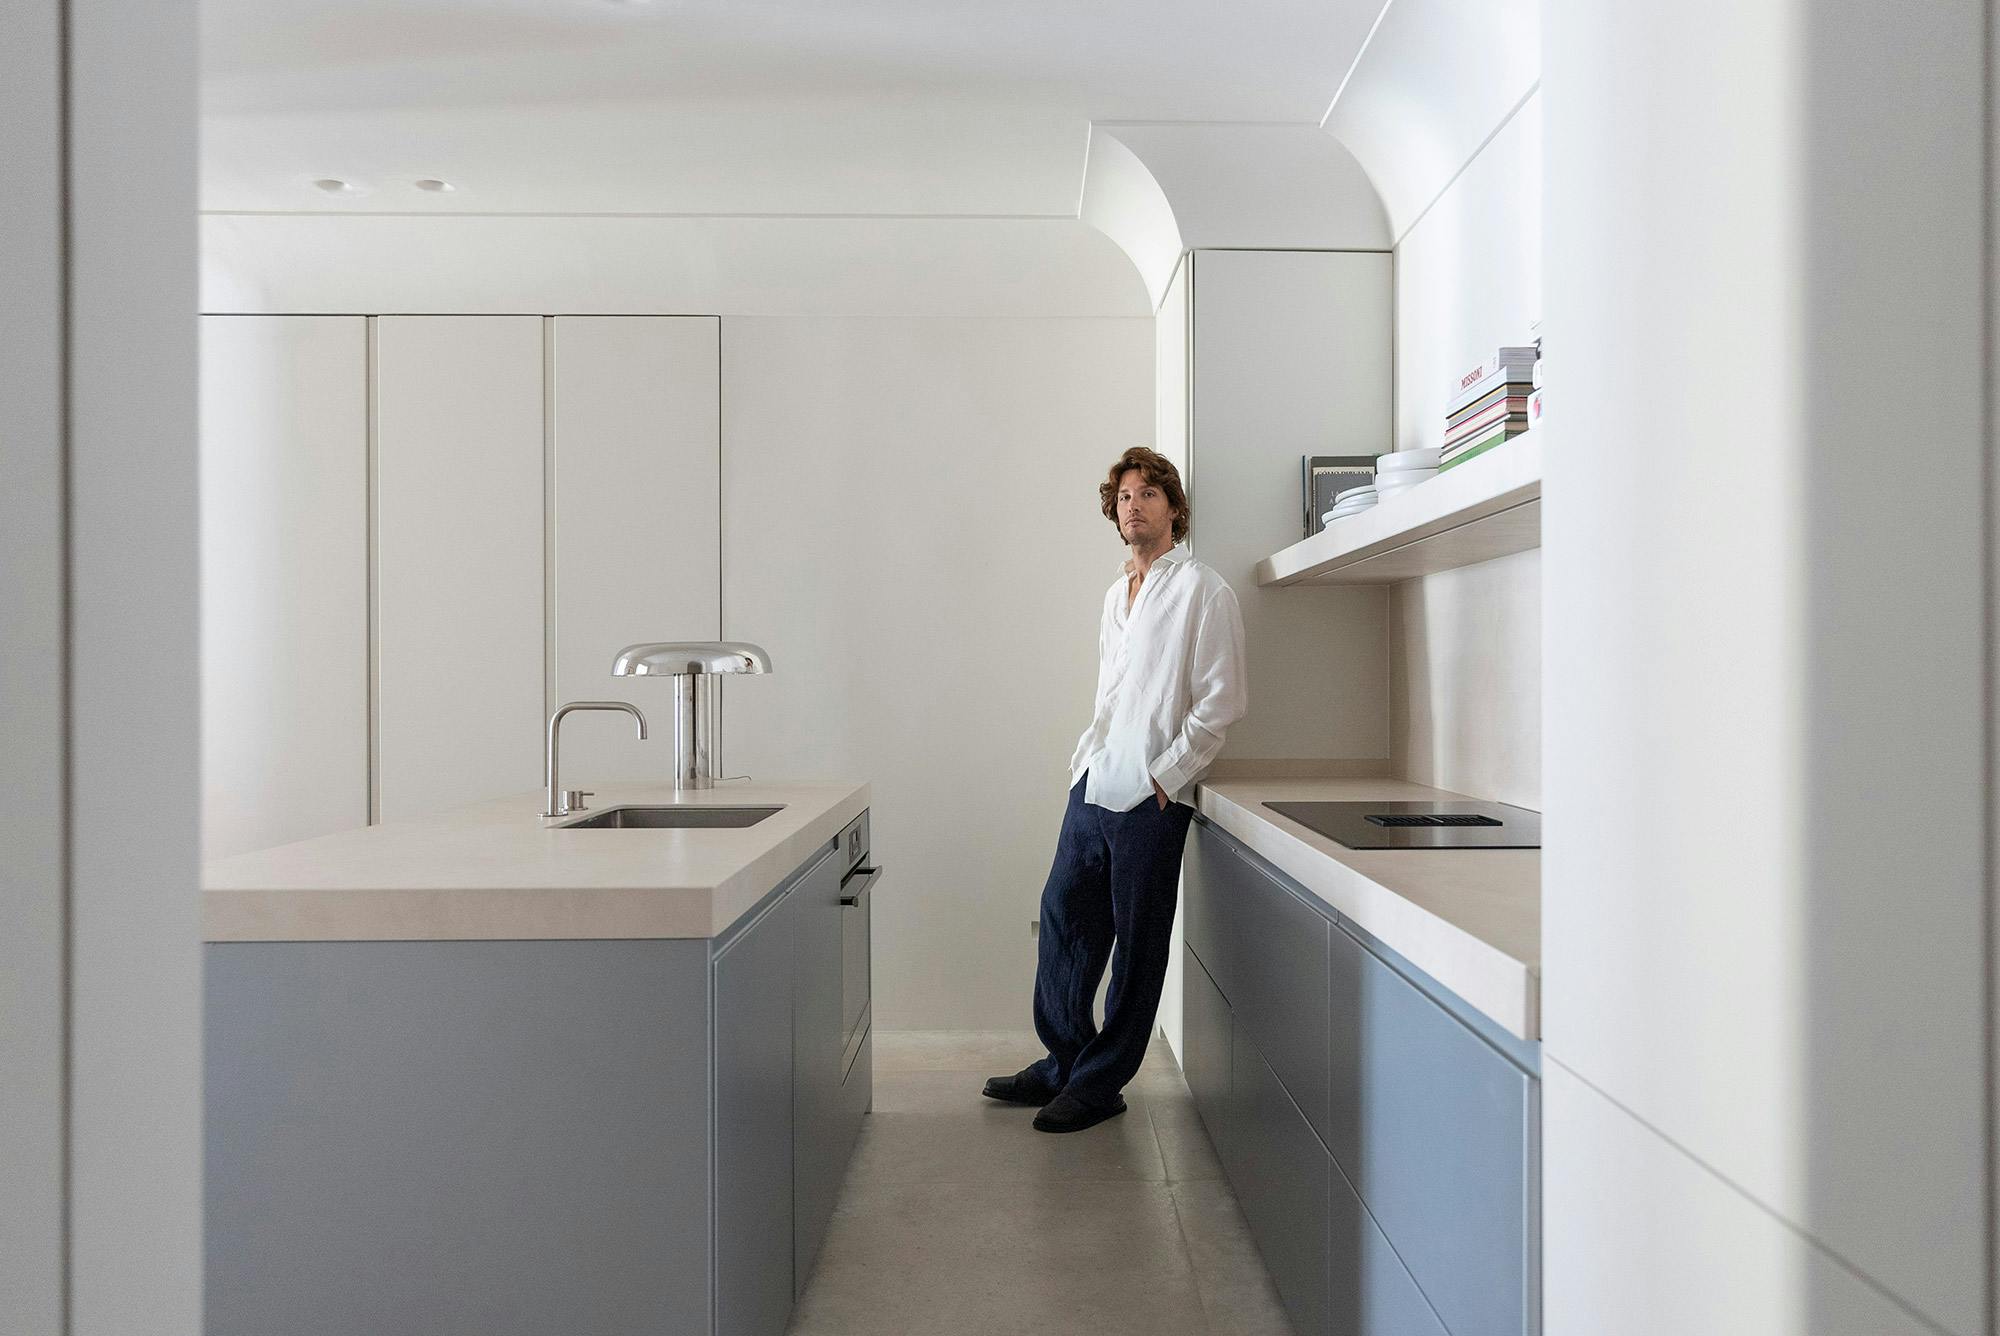 Numero immagine 40 della sezione corrente di DKTN Arga creates an elegant atmosphere in this open plan kitchen with a minimalist approach di Cosentino Italia